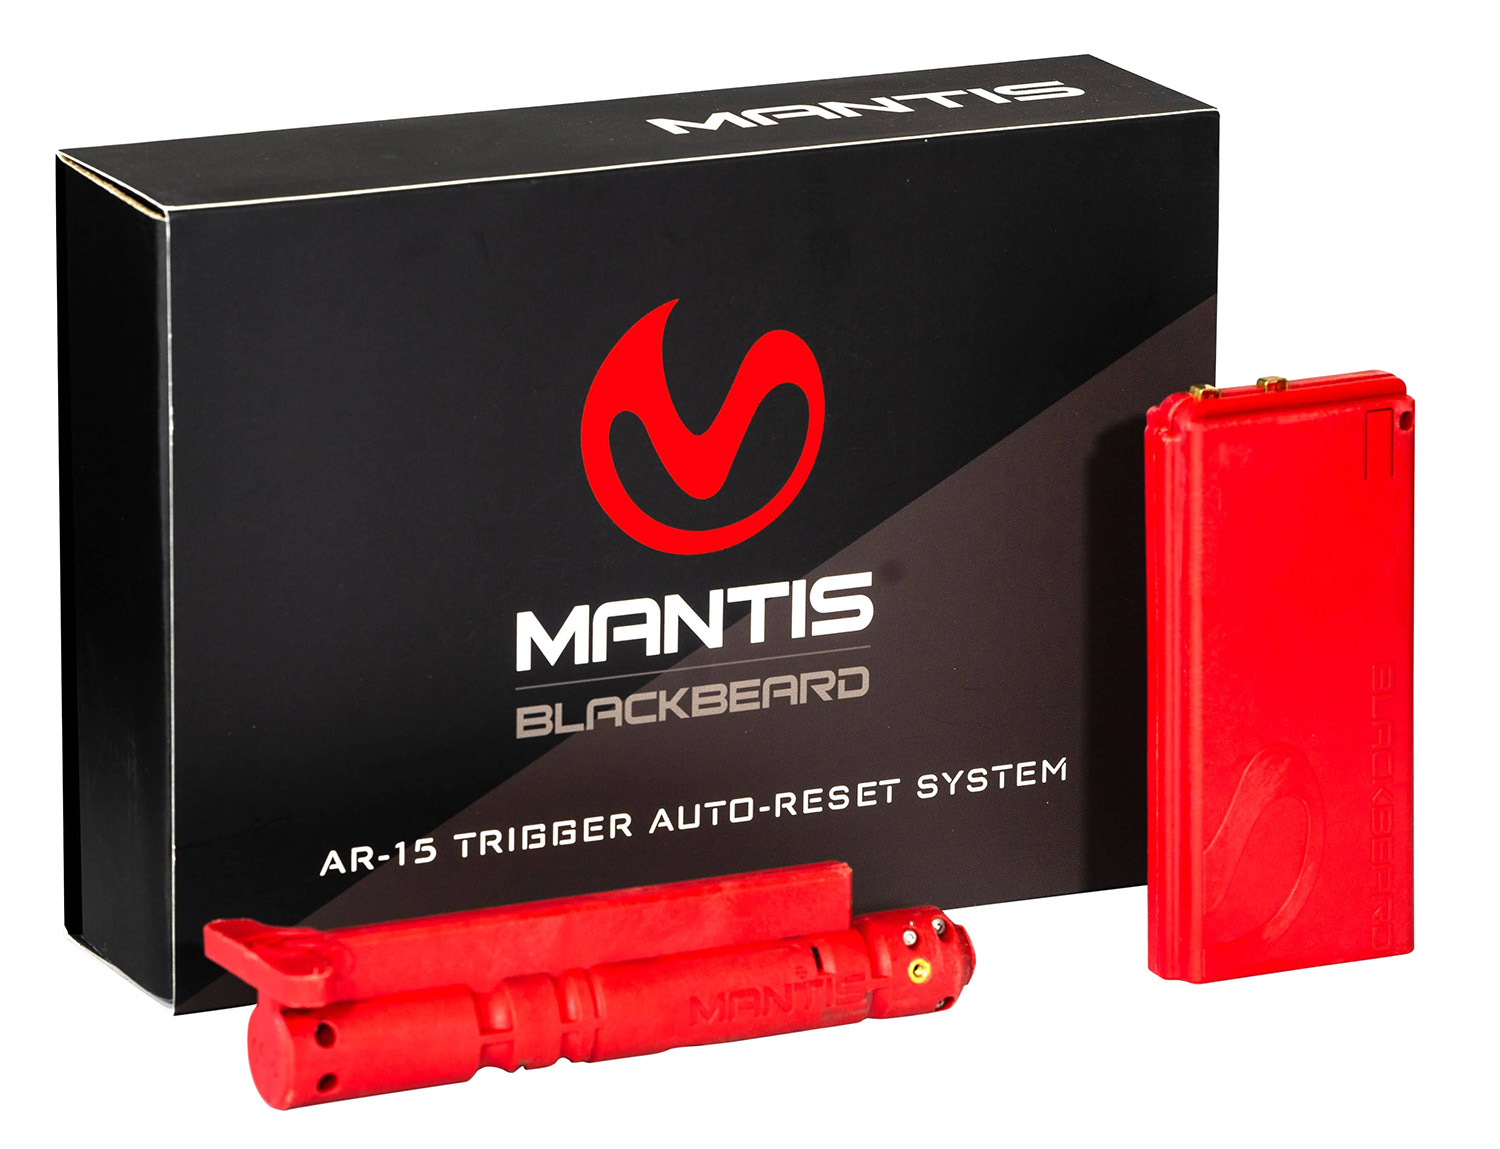 MANTIS Blackbeard: Auto-Resetting Trigger System - AR15 | Red Laser